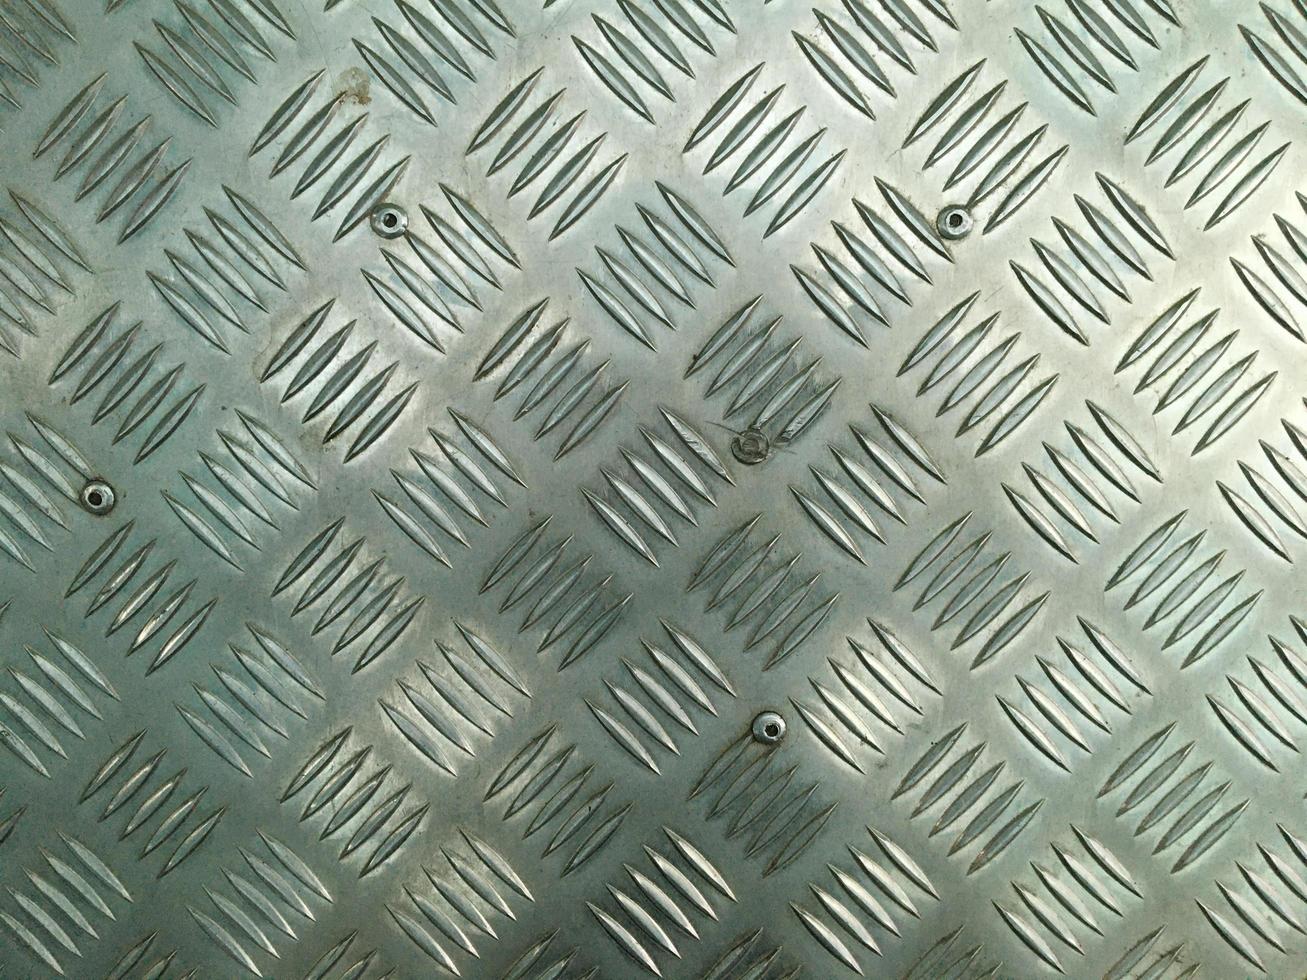 Stahldiamantplatte, Industrieeisenbodenbeschaffenheitshintergrund. foto